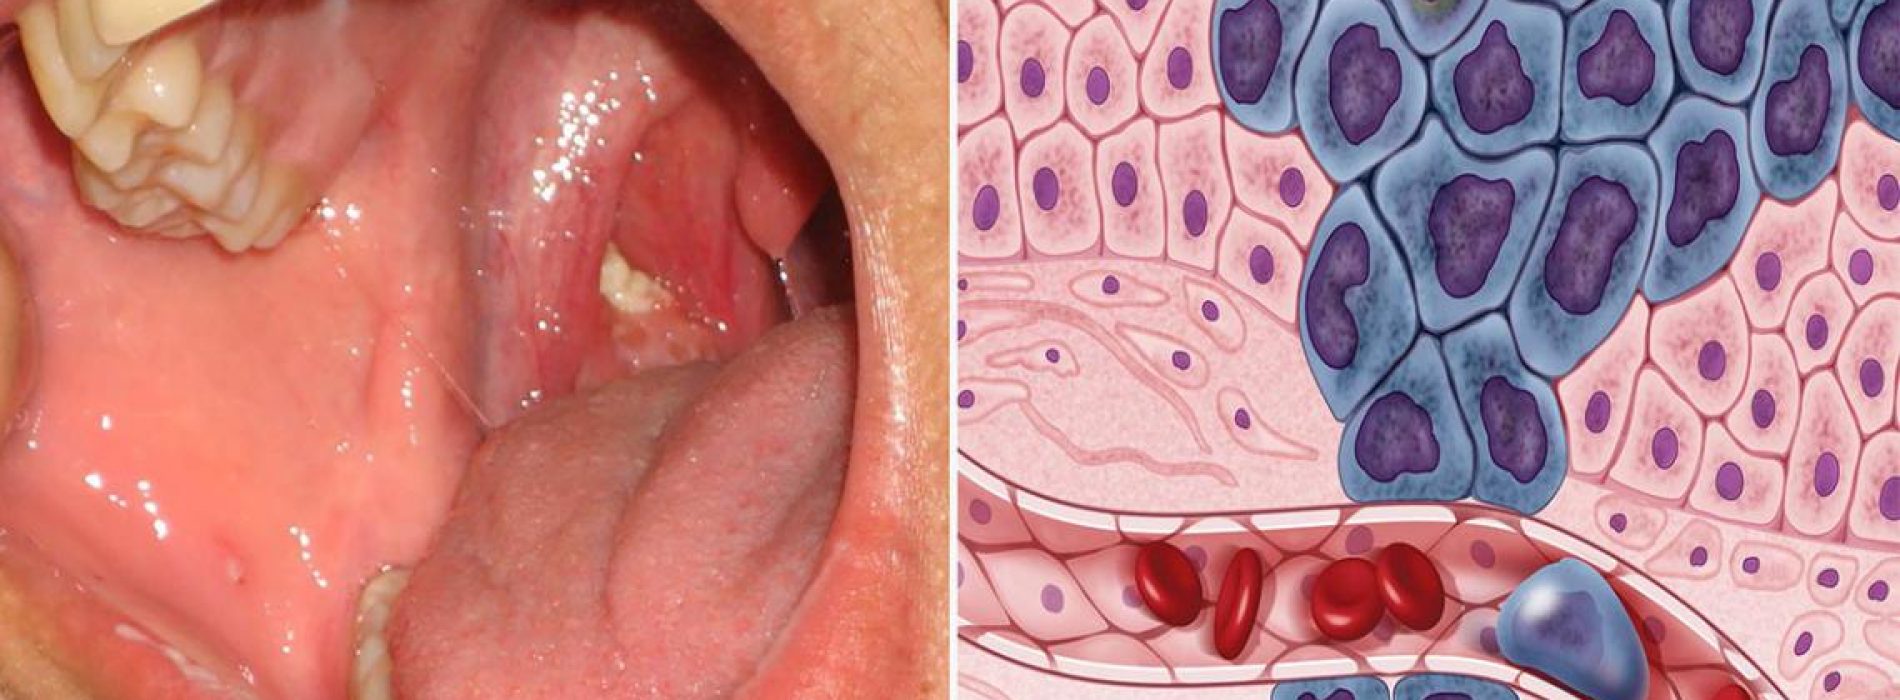 Type bacteriën in mond gekoppeld aan kanker